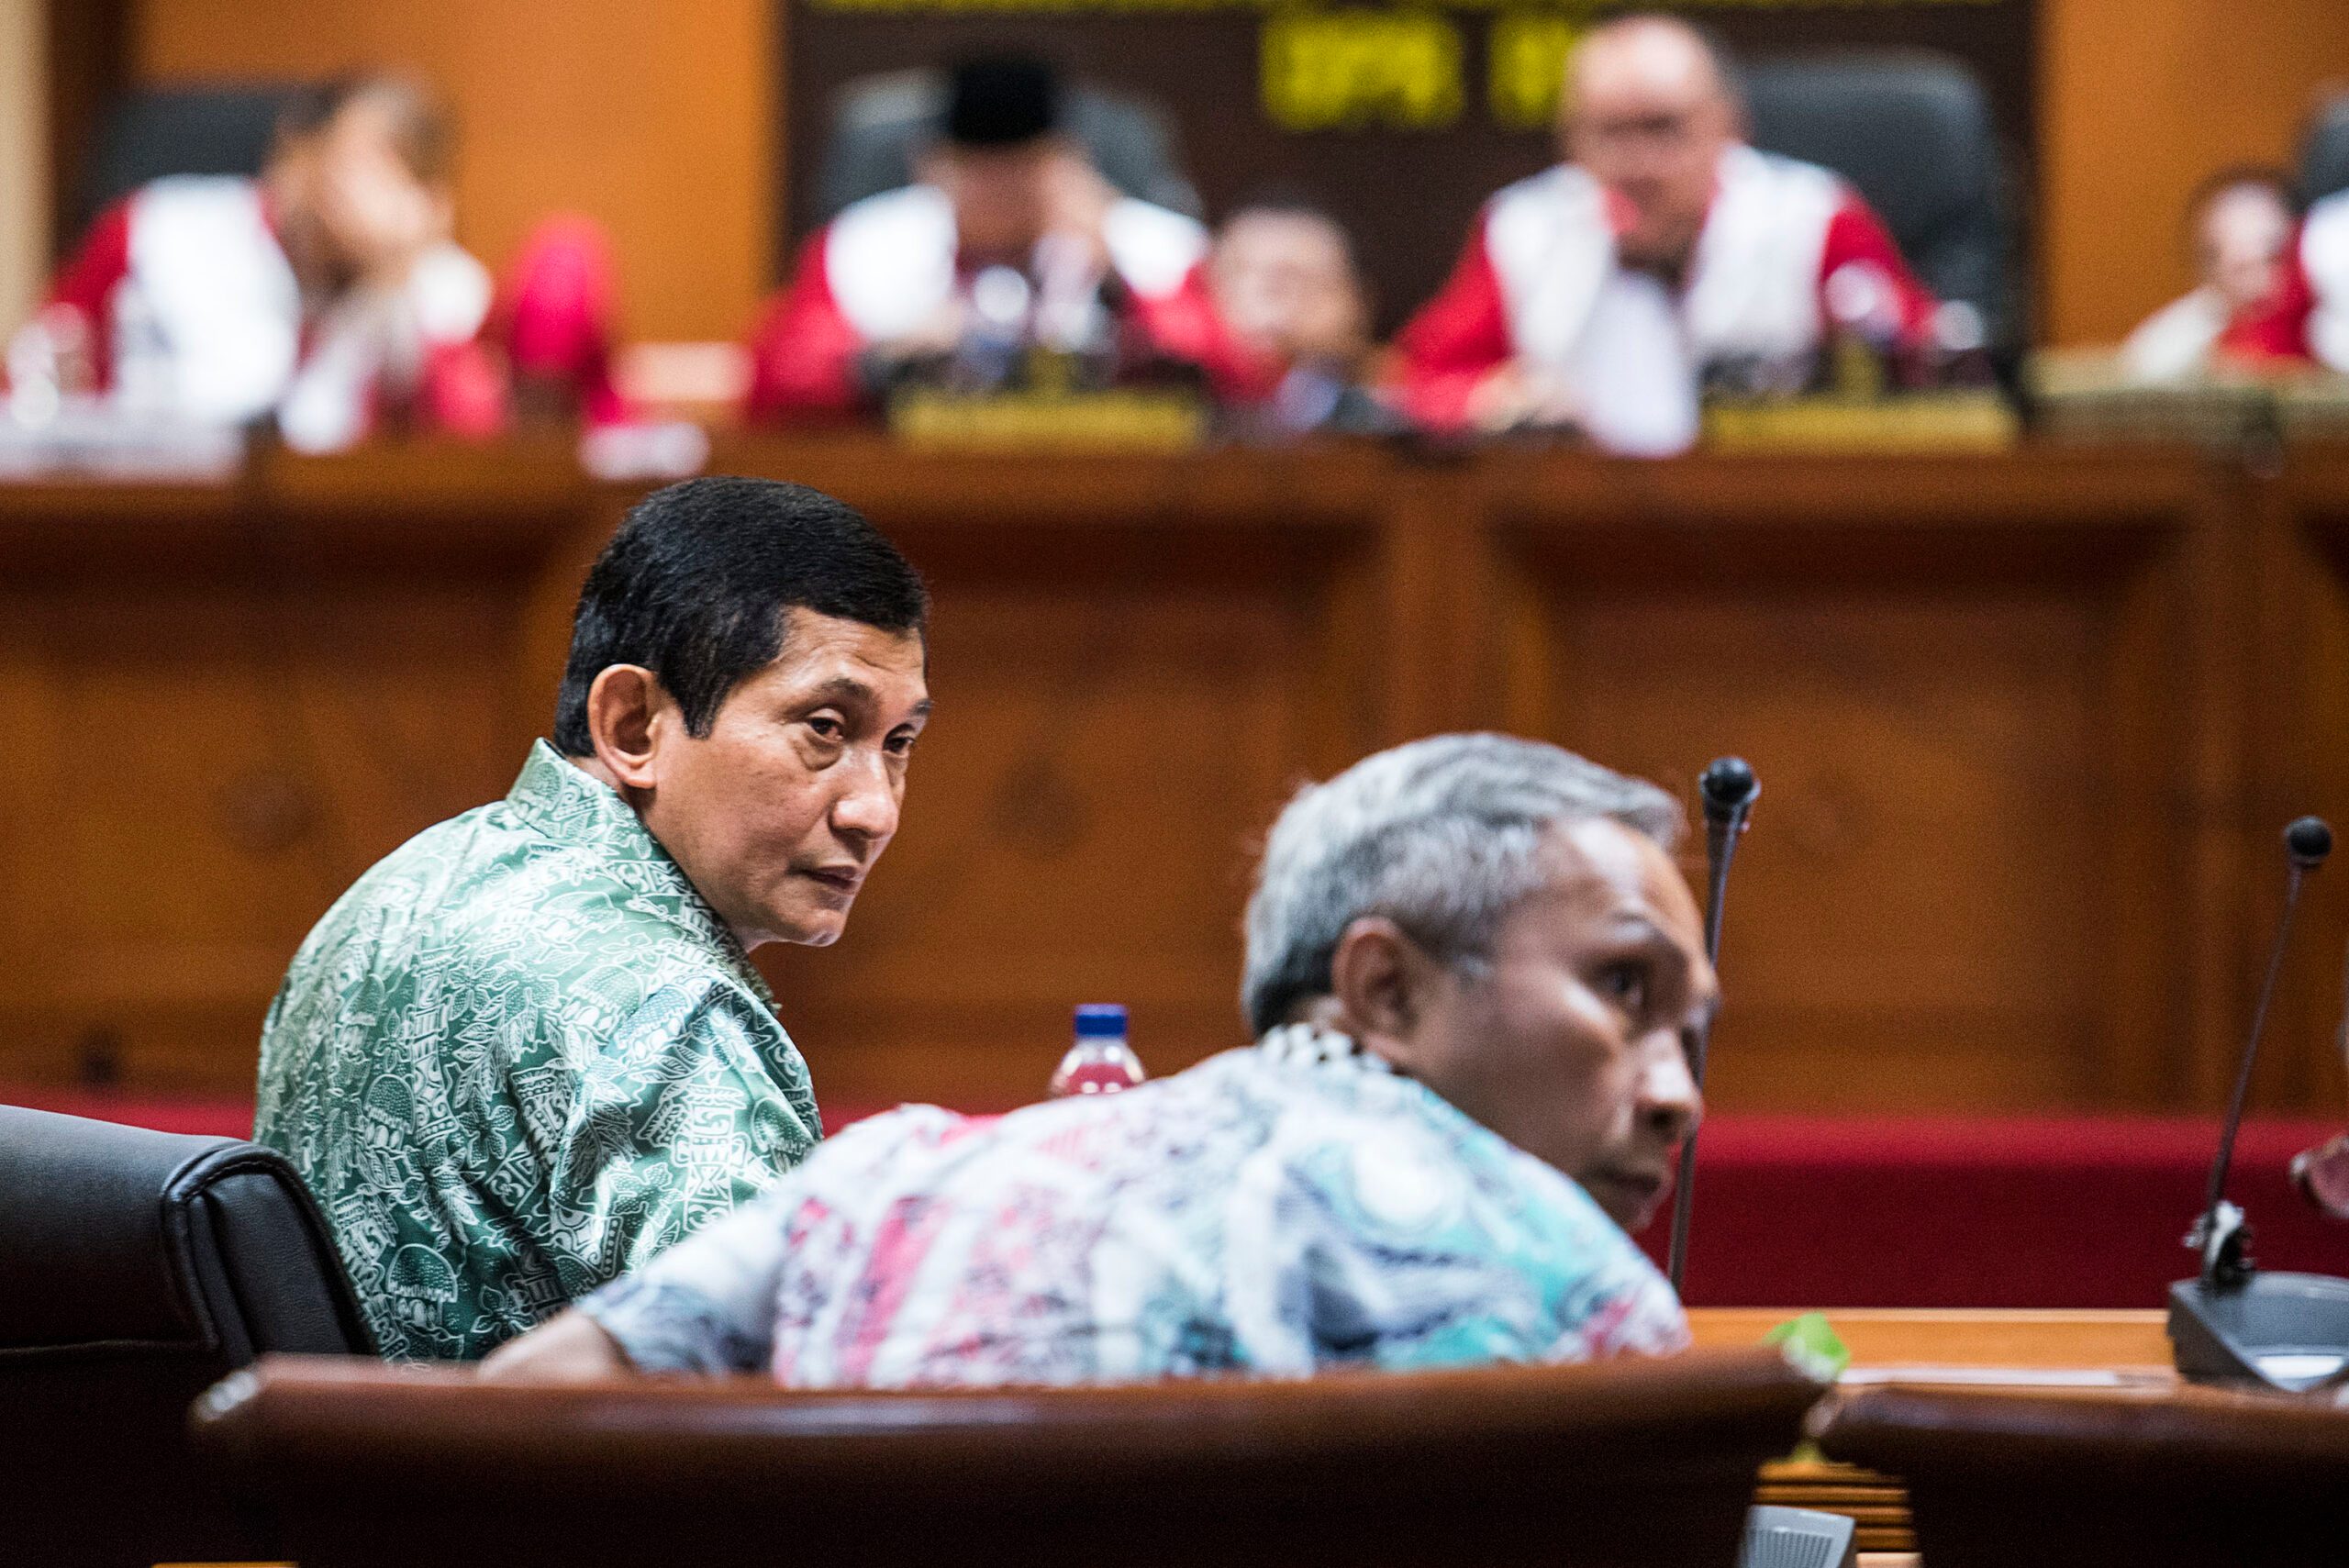 Robert Schroeder gantikan Maroef Sjamsoeddin sebagai Presdir Freeport Indonesia sementara